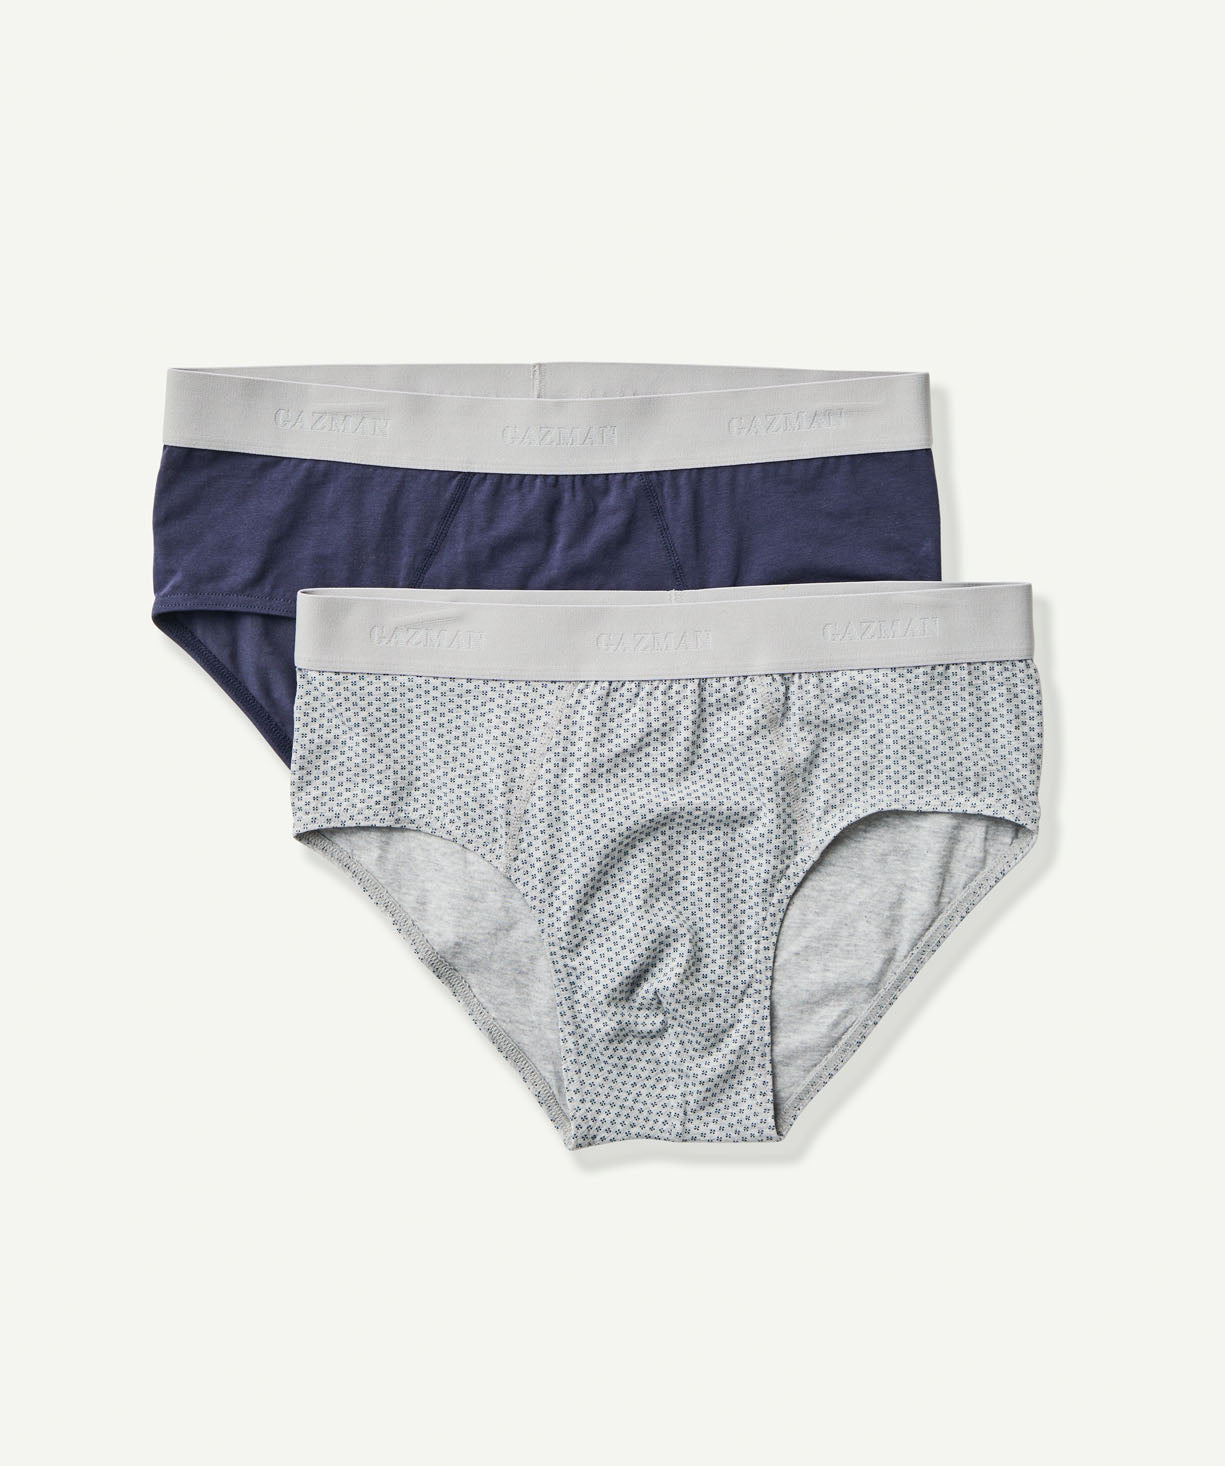 2 Pack Mixed Briefs - Assorted - Underwear - GAZMAN